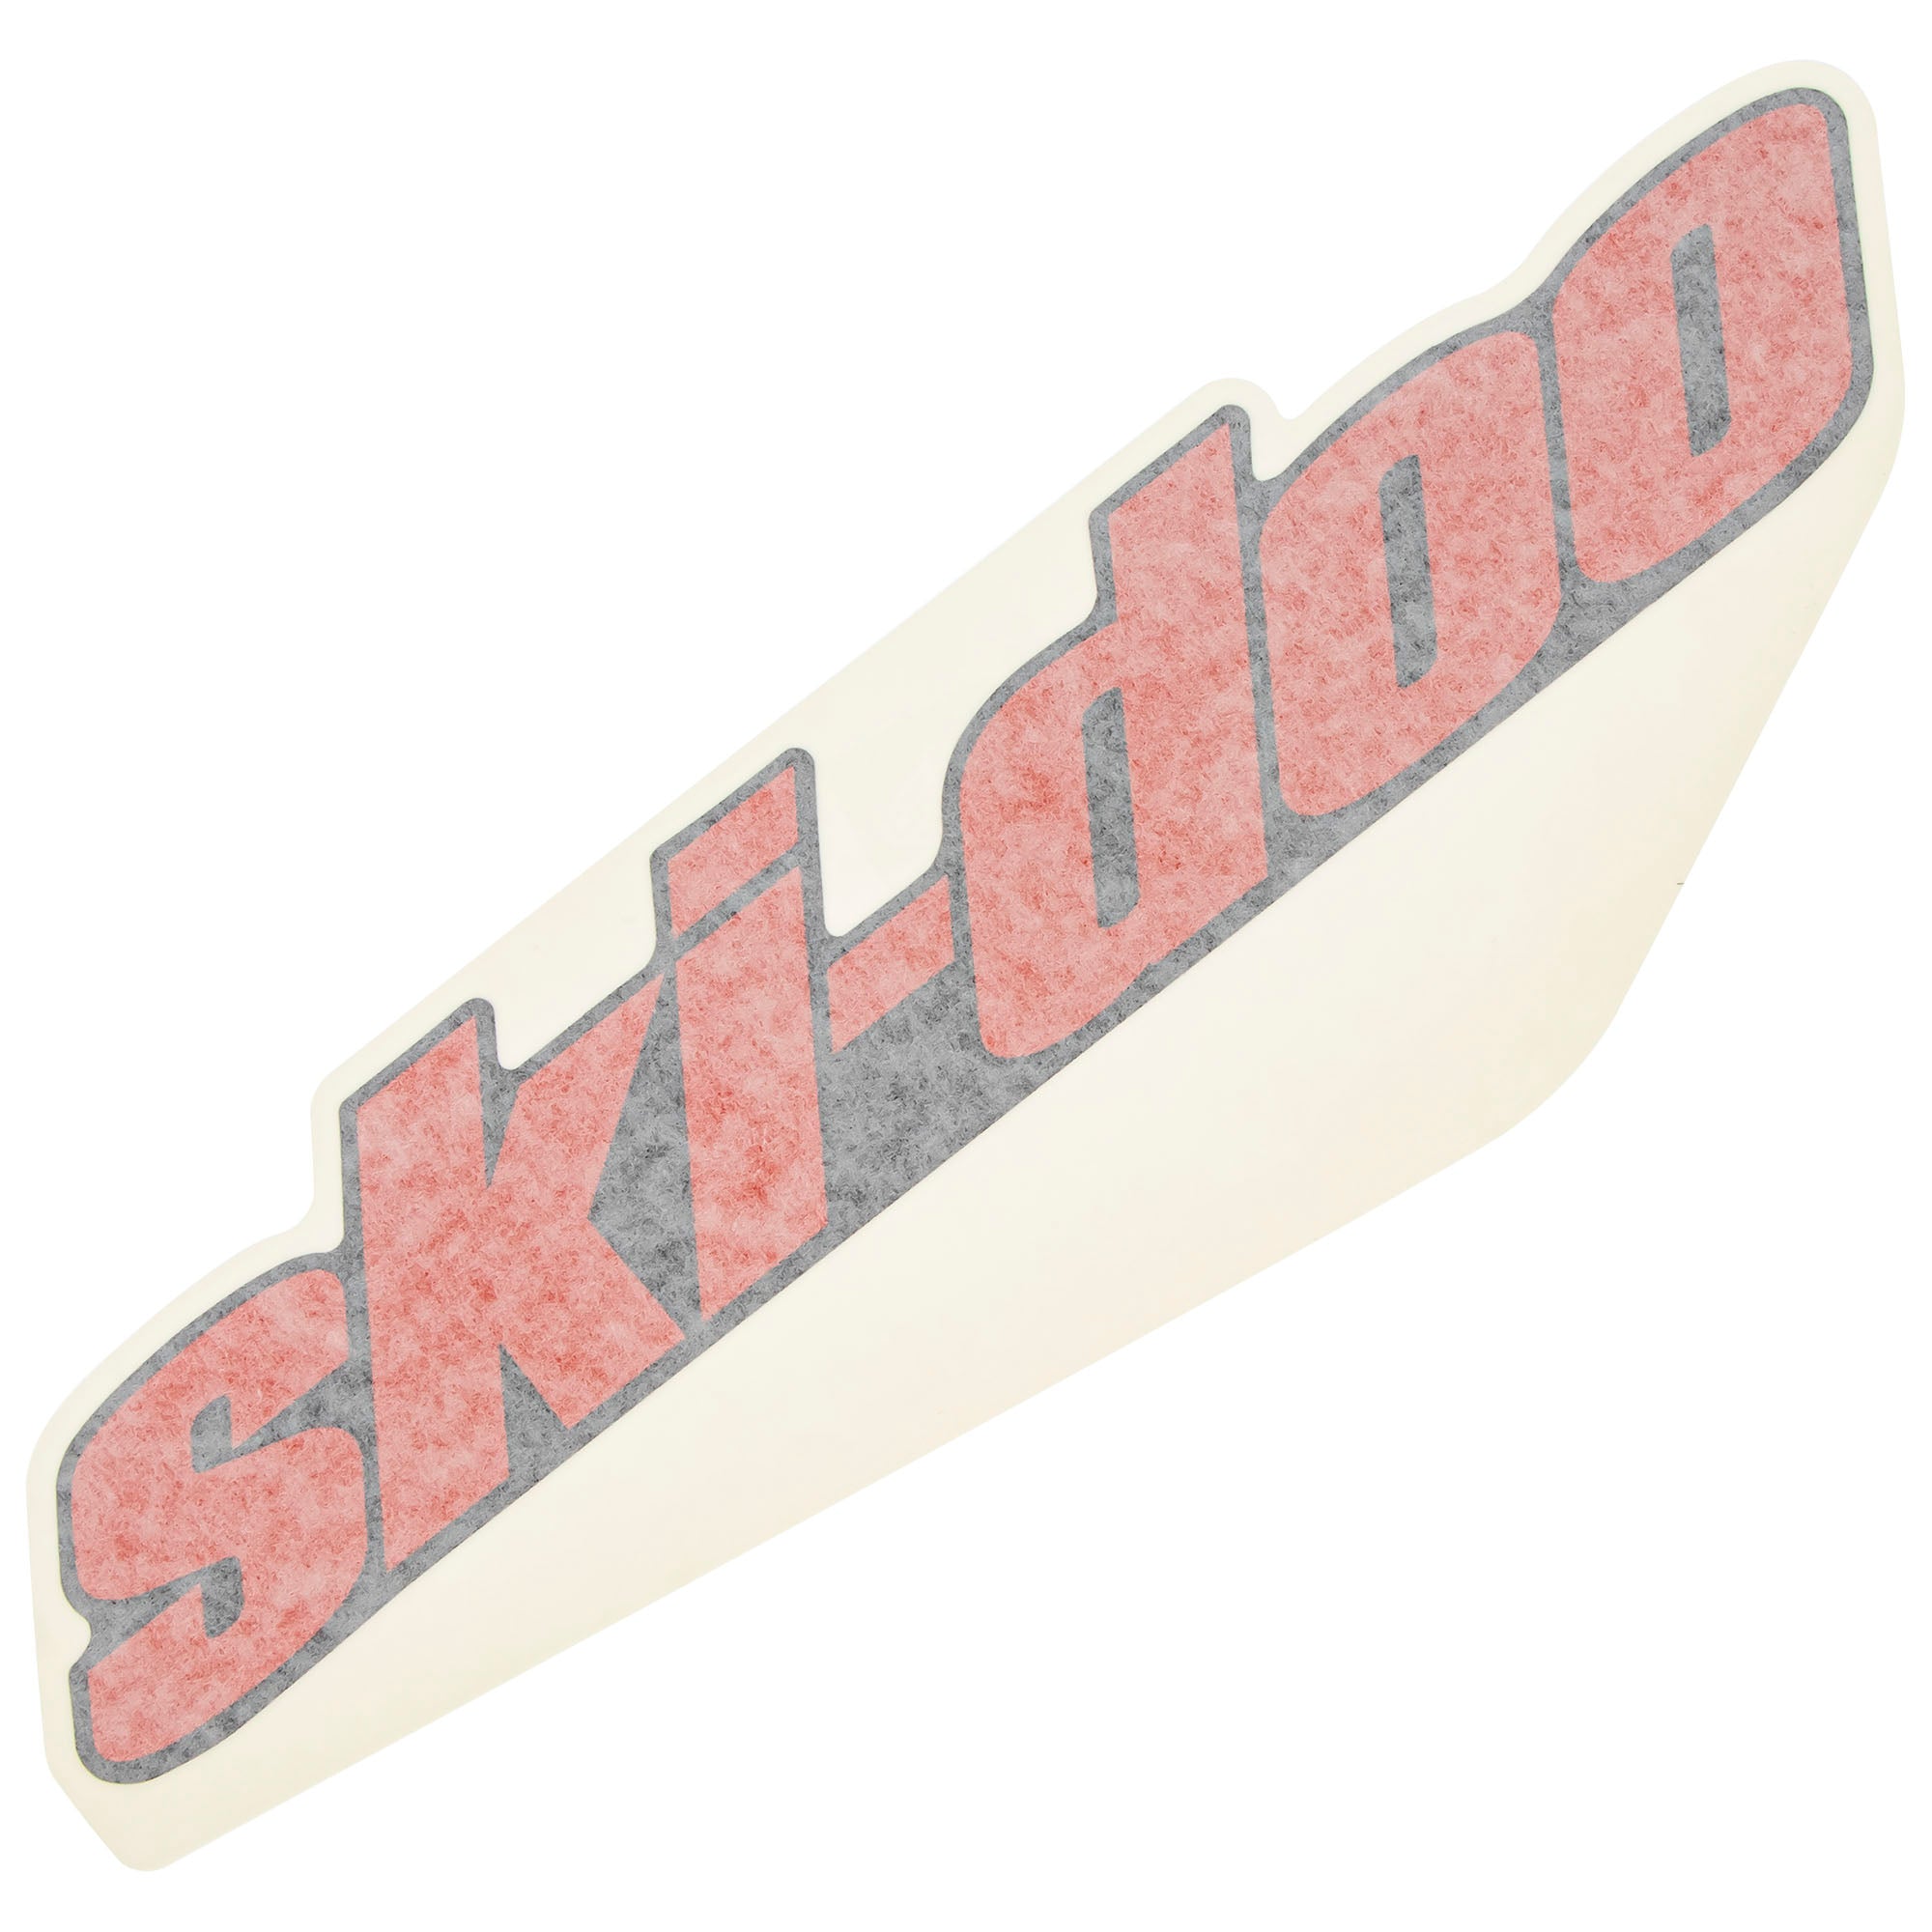 Ski-Doo 516006488 Decal Summit Renegade MXZ 600 800R 900